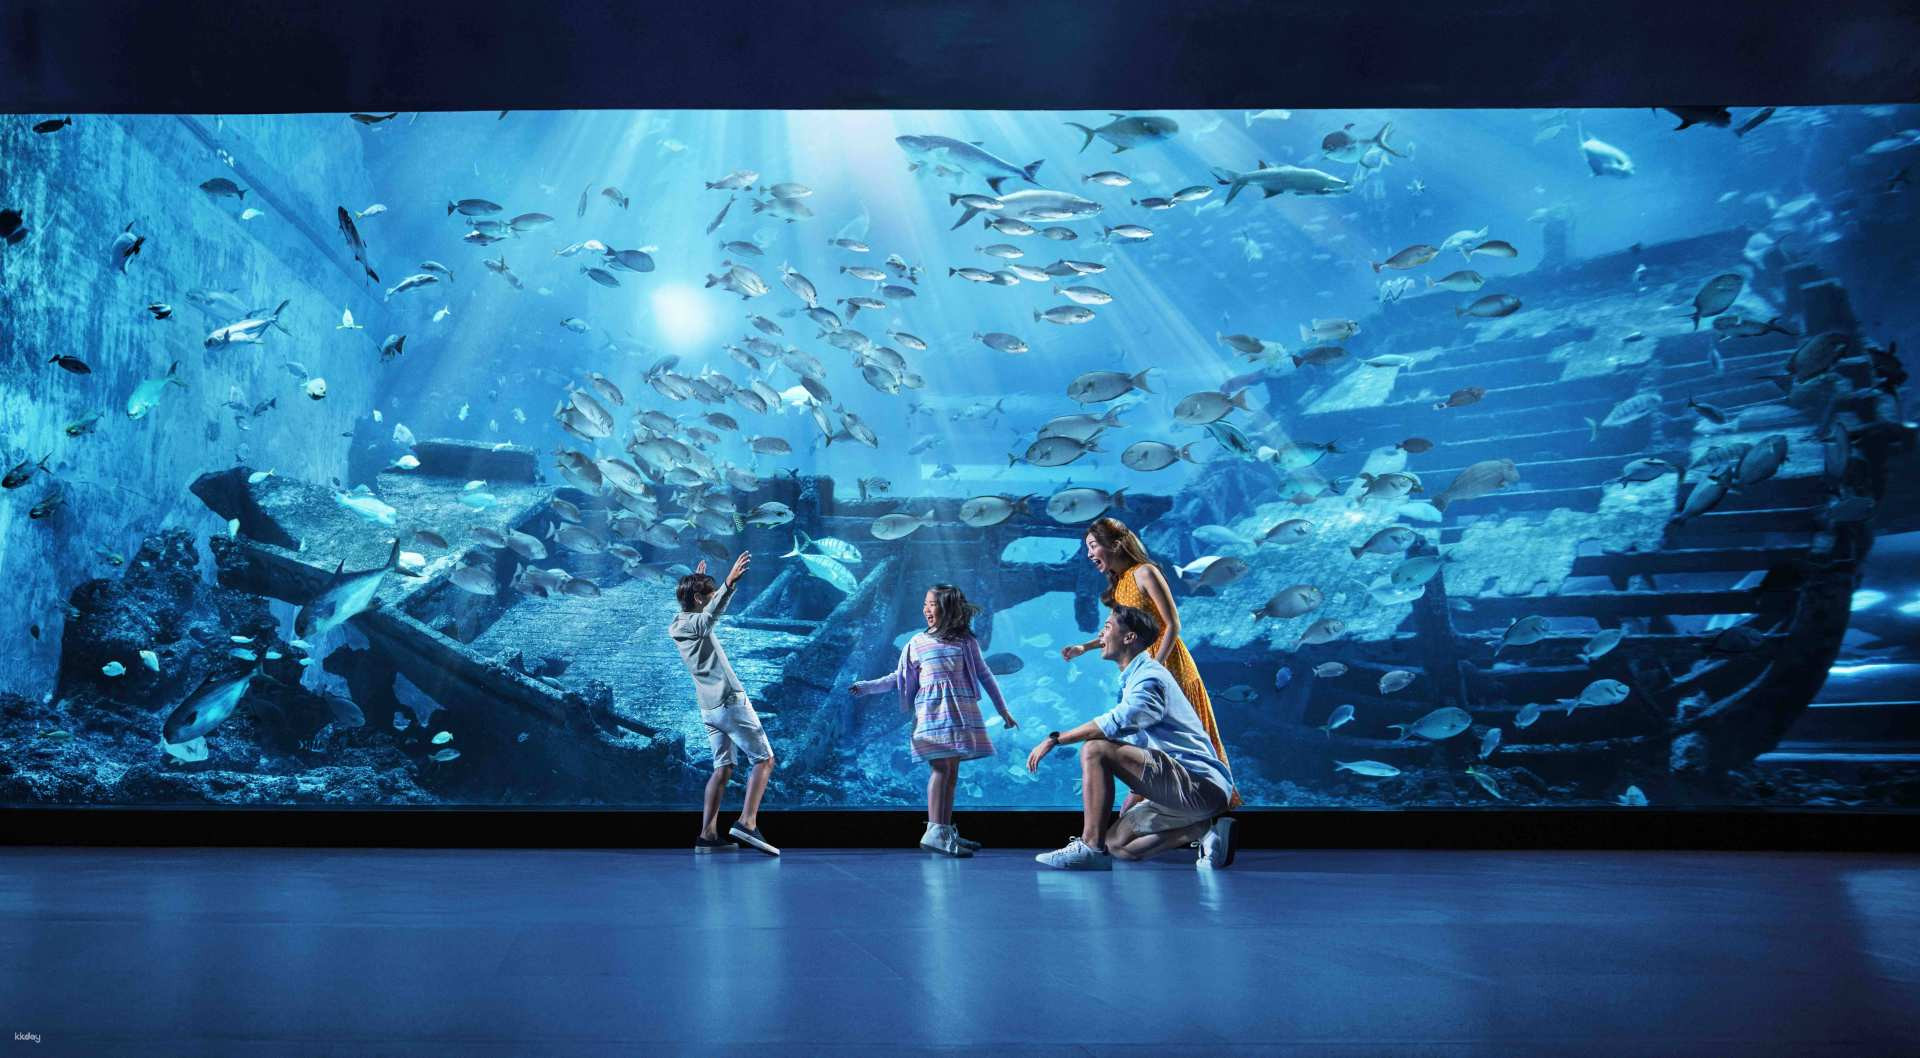 S.E.A Aquarium ngôi nhà của hàng triệu loài cá